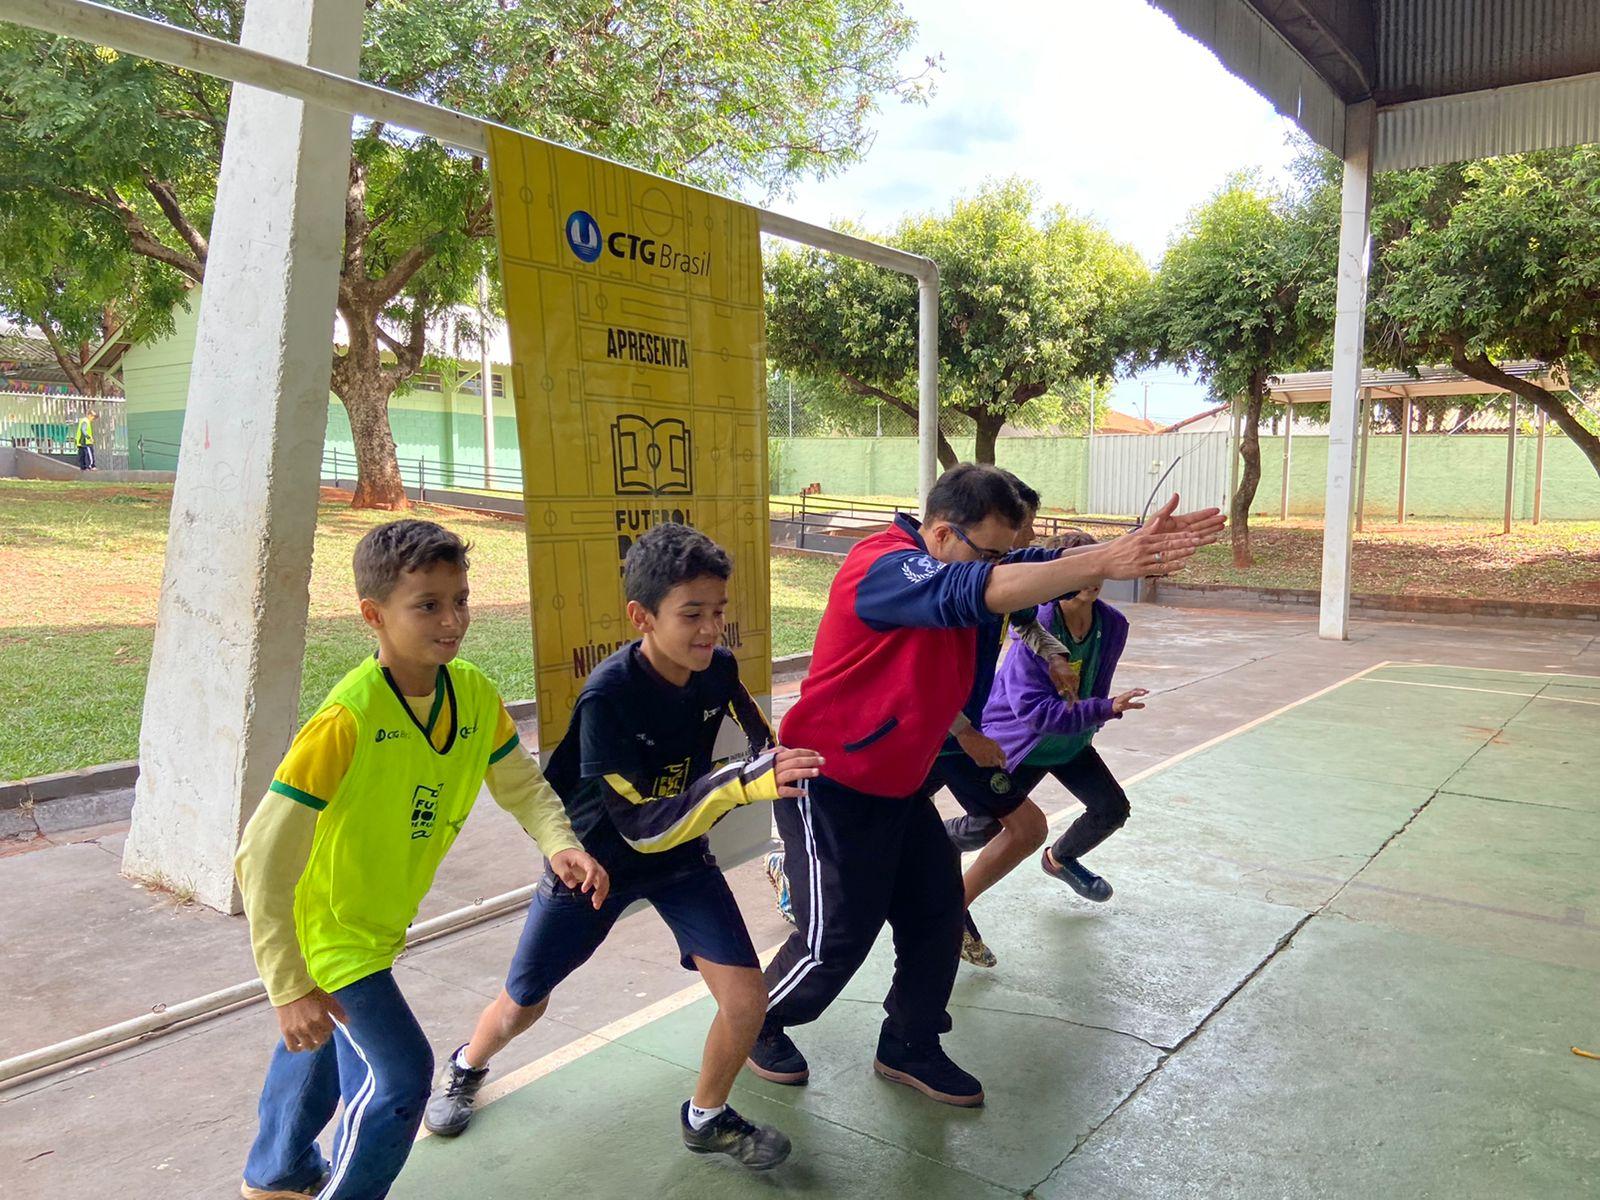 Driblando desafios: parceria entre CTG Brasil e Futebol de Rua beneficia crianças e jovens com esporte e capacitação profissional